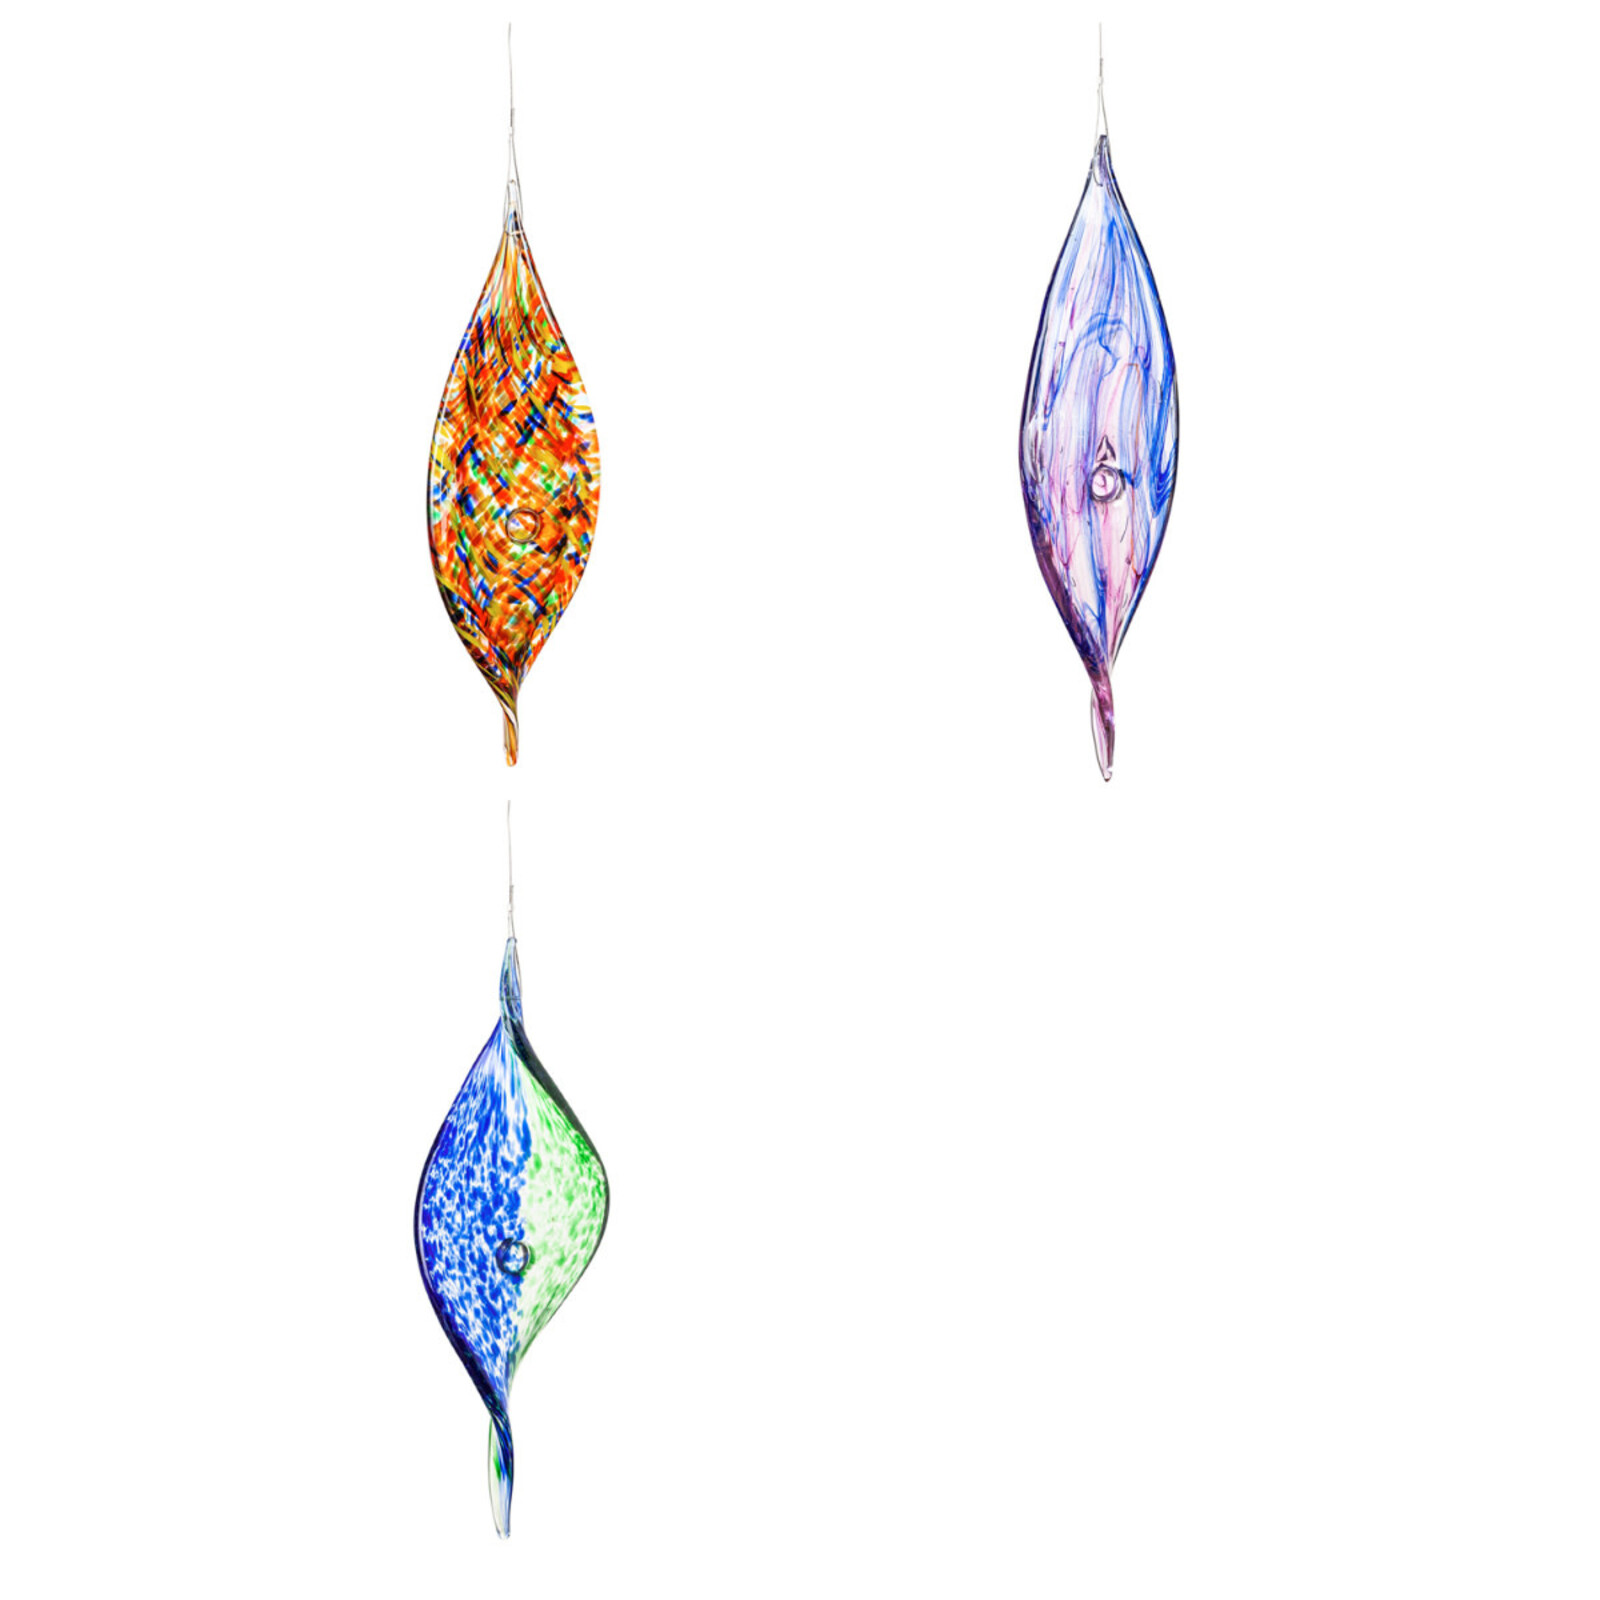 Evergreen Enterprises Hanging Art Glass Swirl Decor   84G3277 loading=